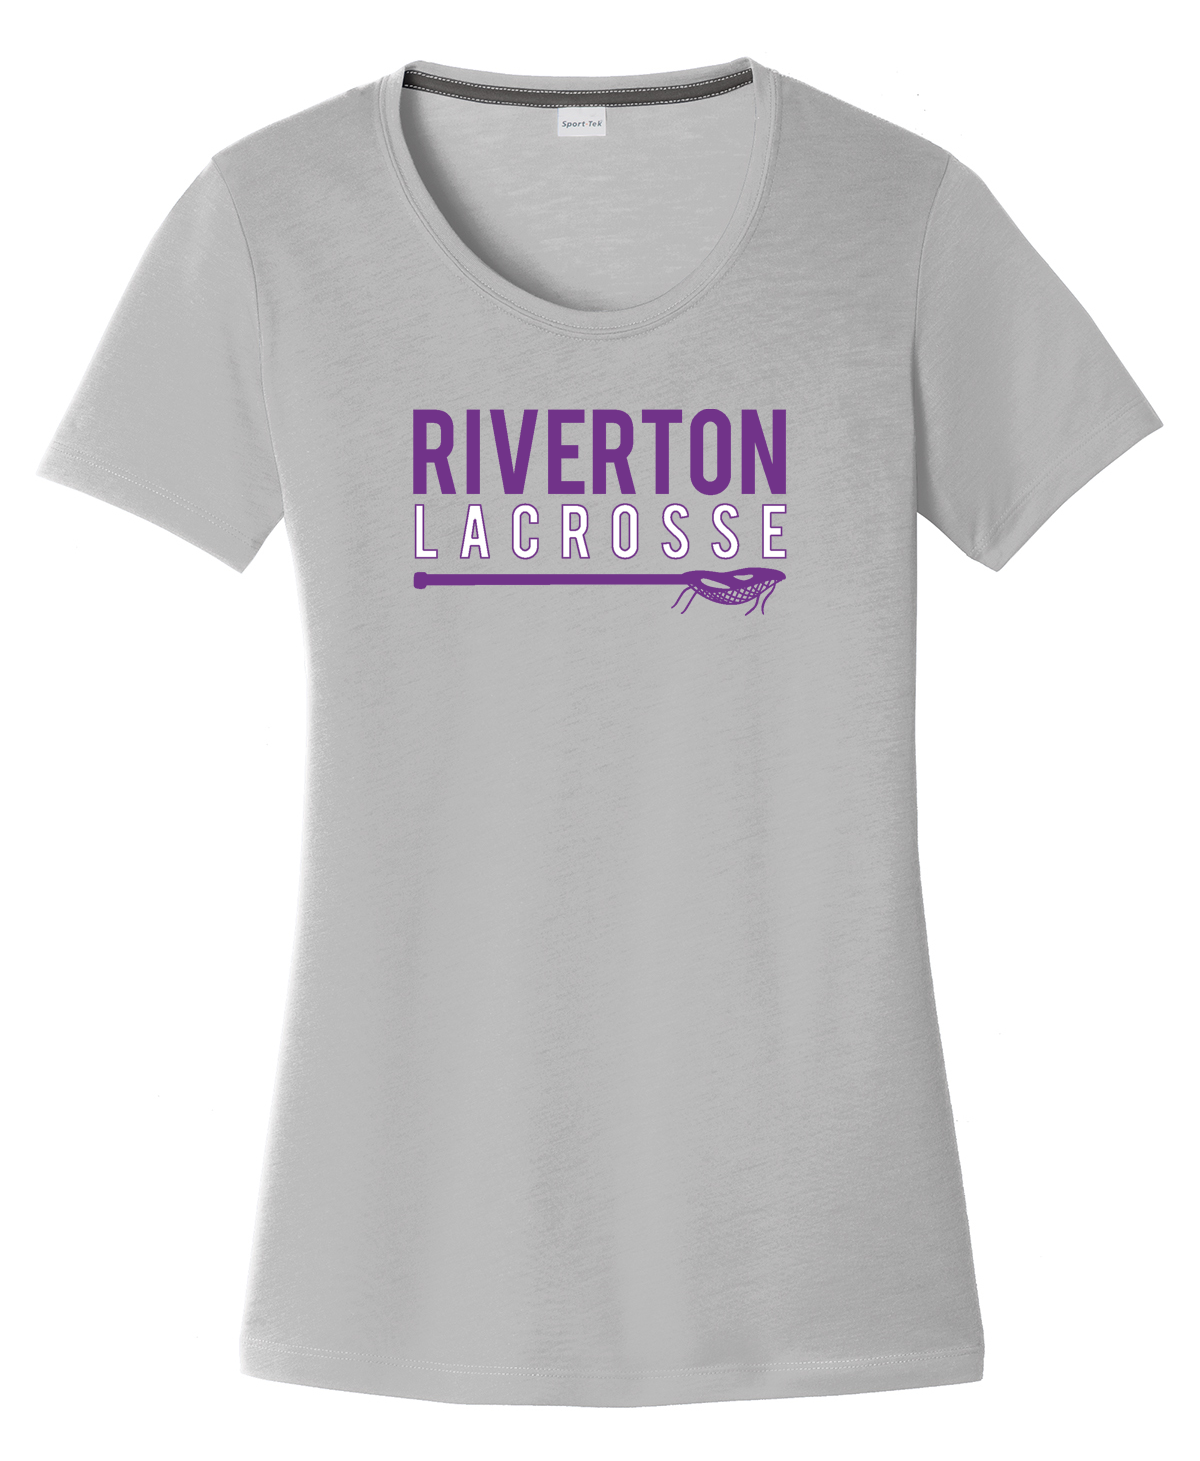 Riverton Lacrosse Women's CottonTouch Performance T-Shirt